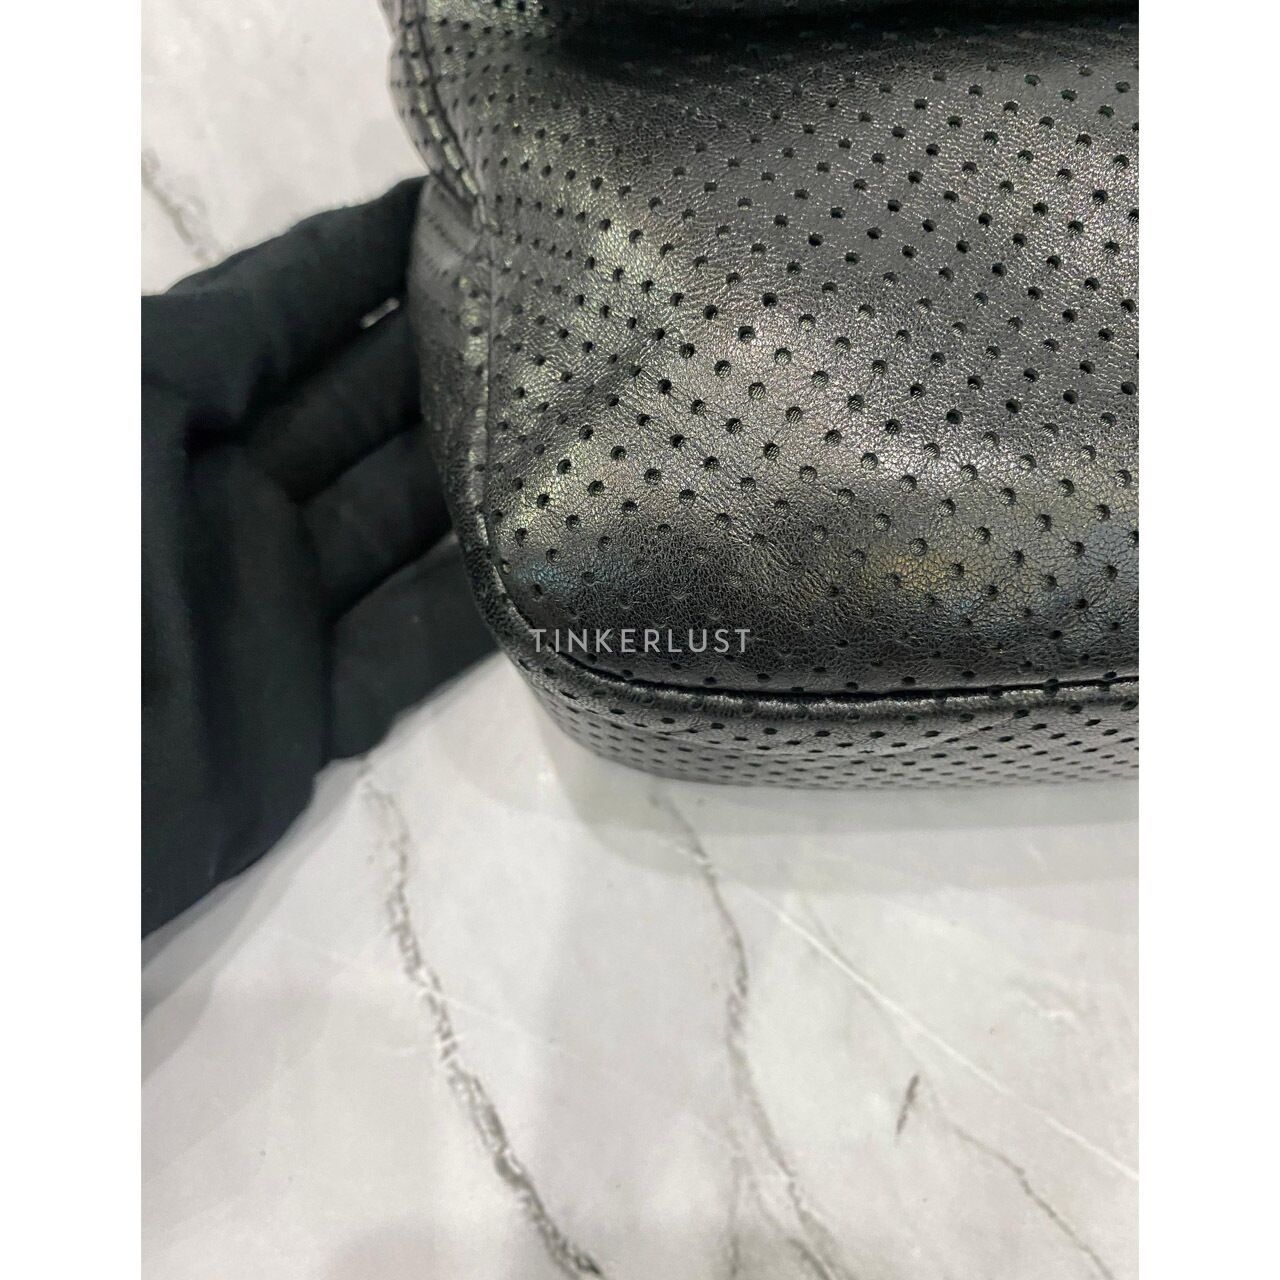 Chanel Perforated Drill Flap Bag Black GHW #11 Shoulder Bag